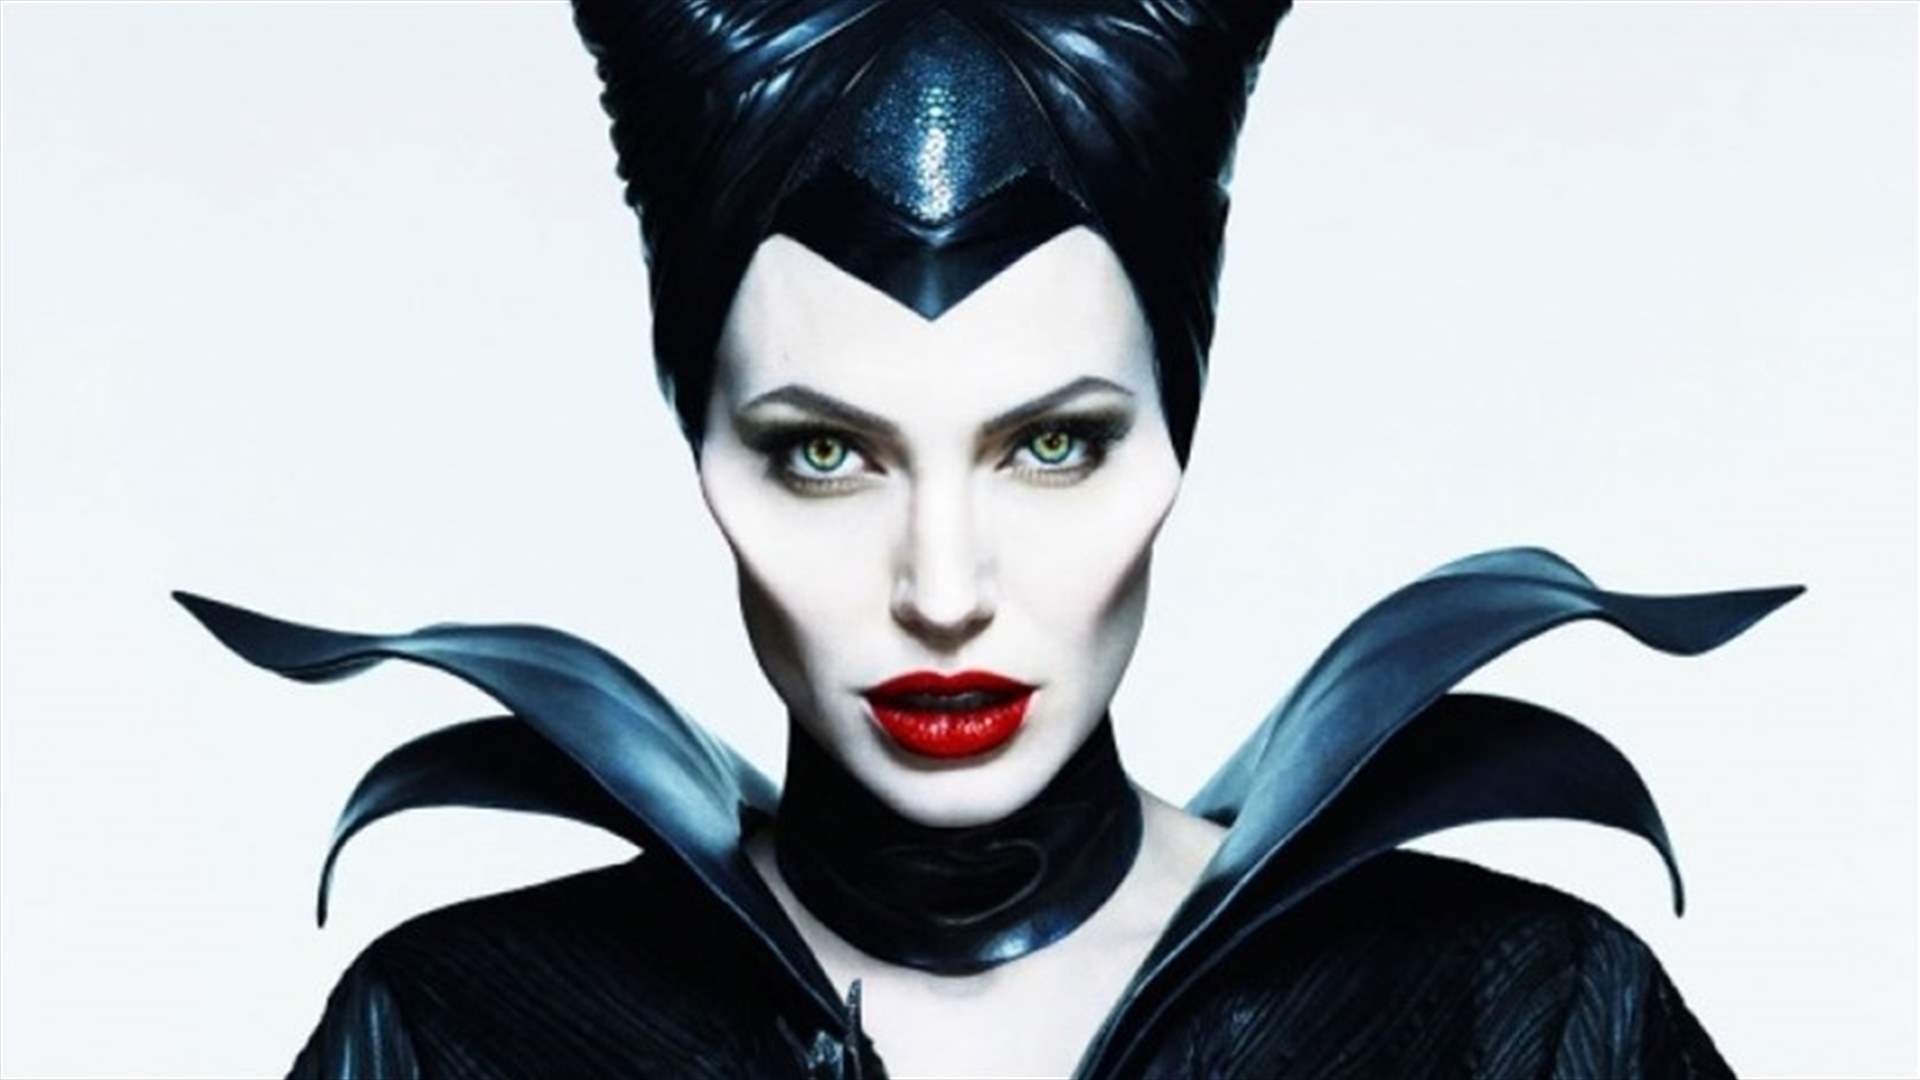 أنجلينا جولي تعود بشخصية Maleficent... وفيديو يوثق تحولها!